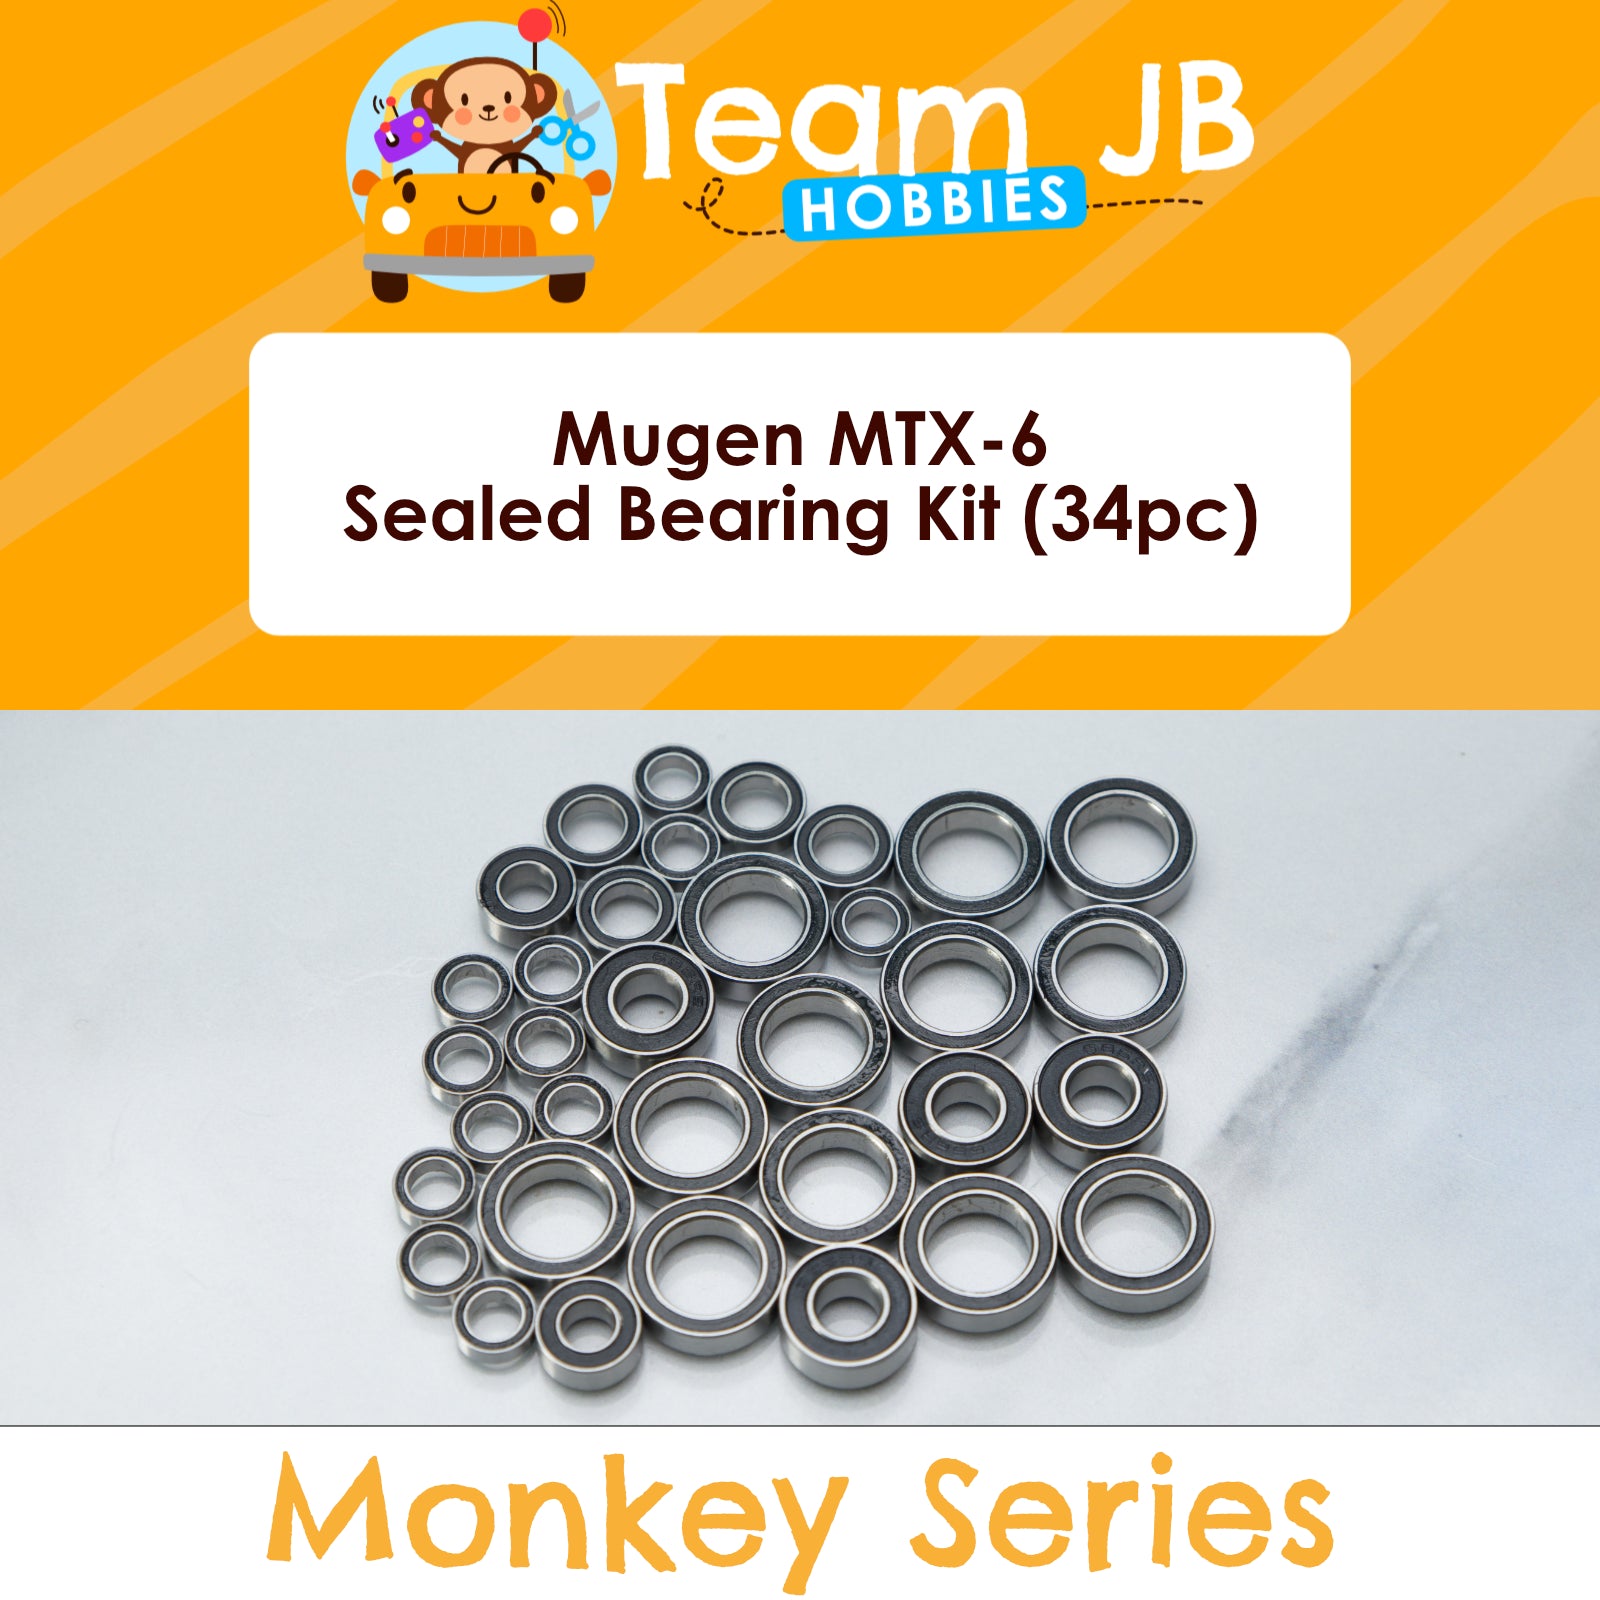 Mugen MTX-6 - Sealed Bearing Kit